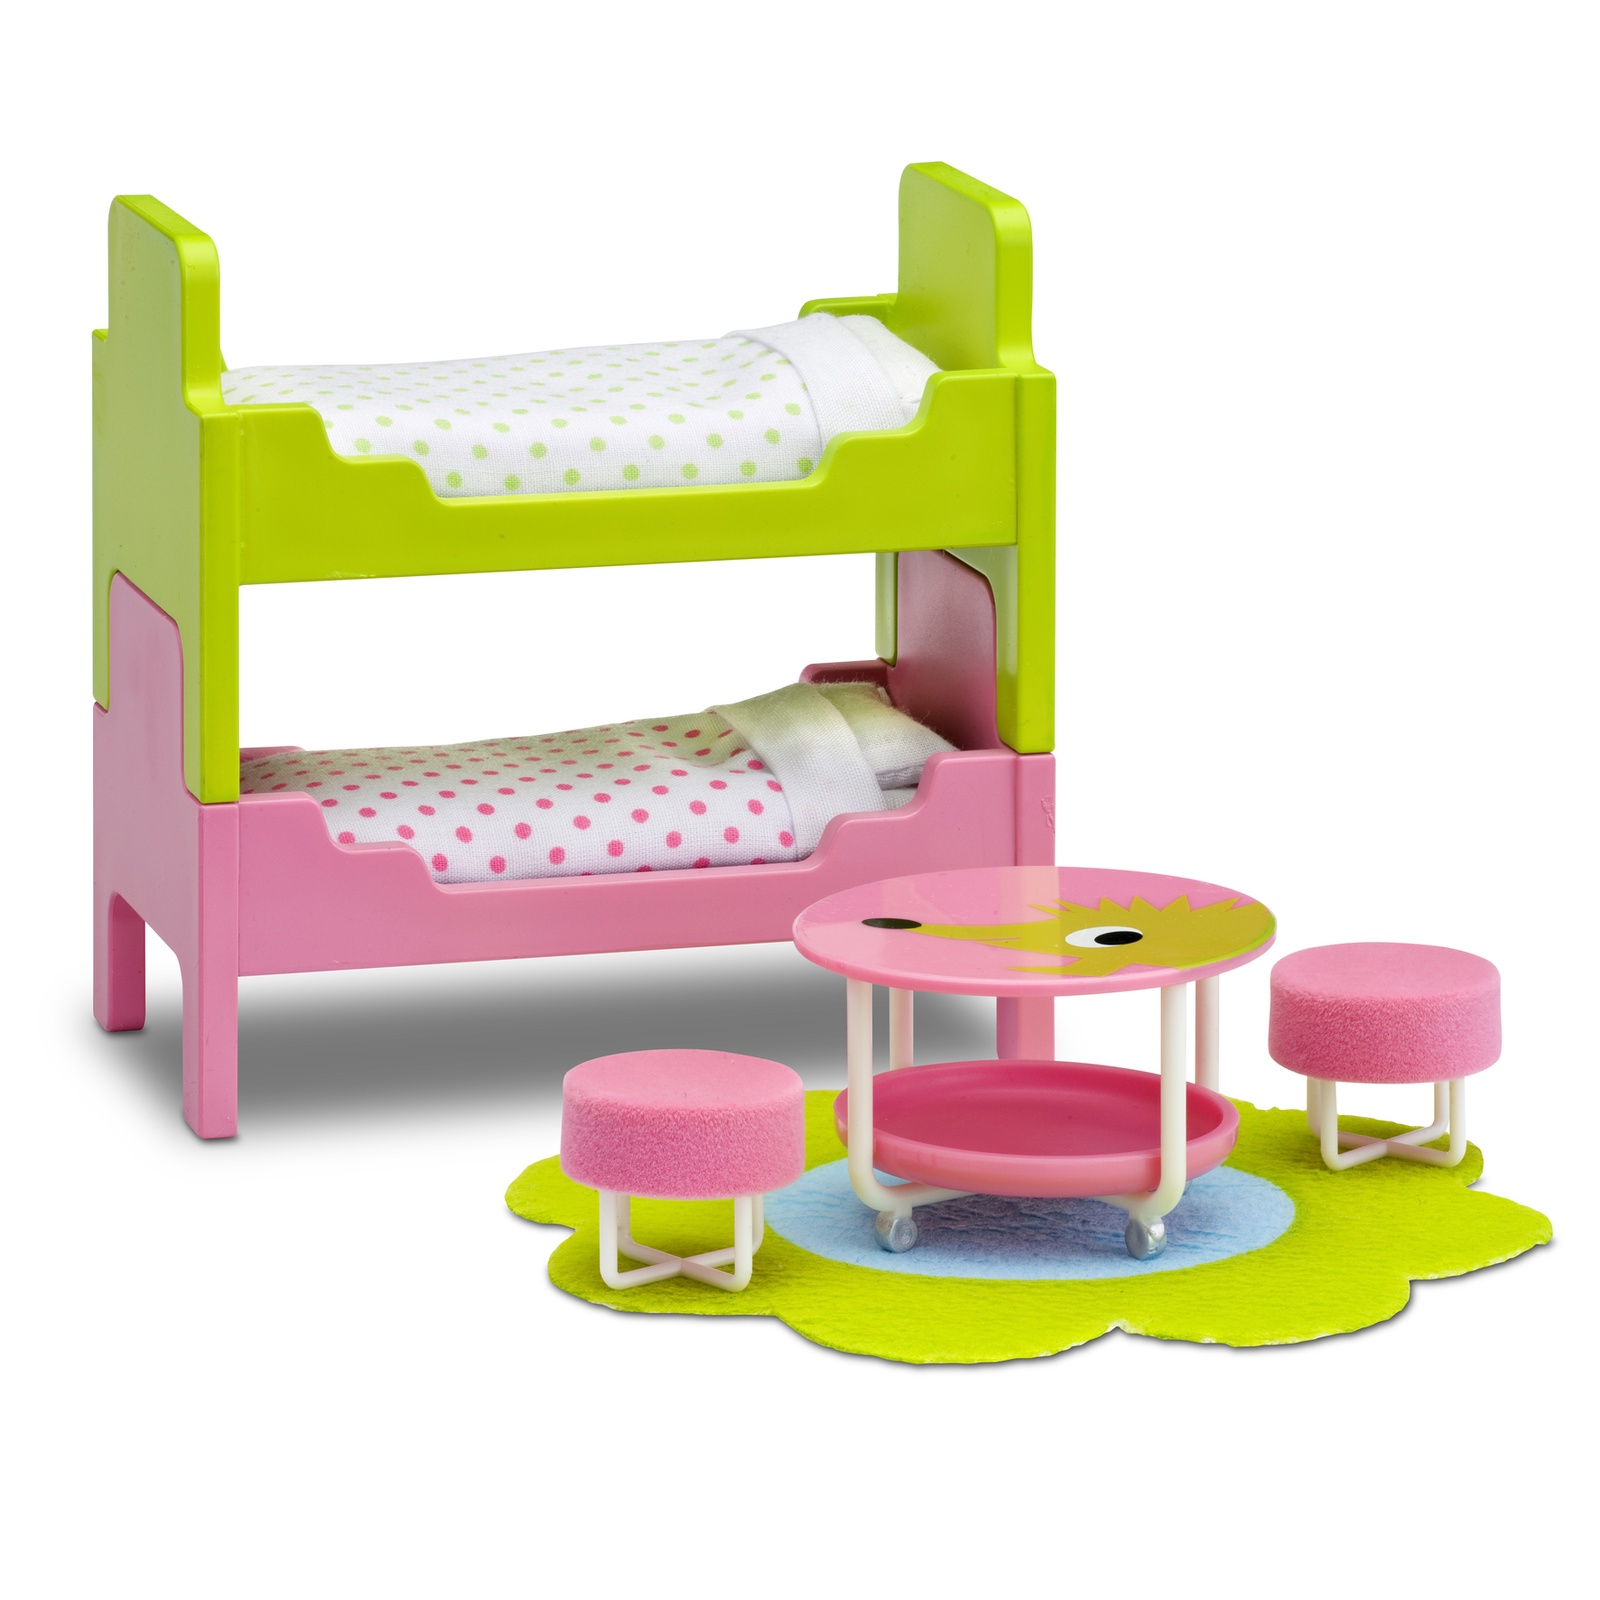 Мебель для домика Lundby "Смоланд", детская с 2 кроватями